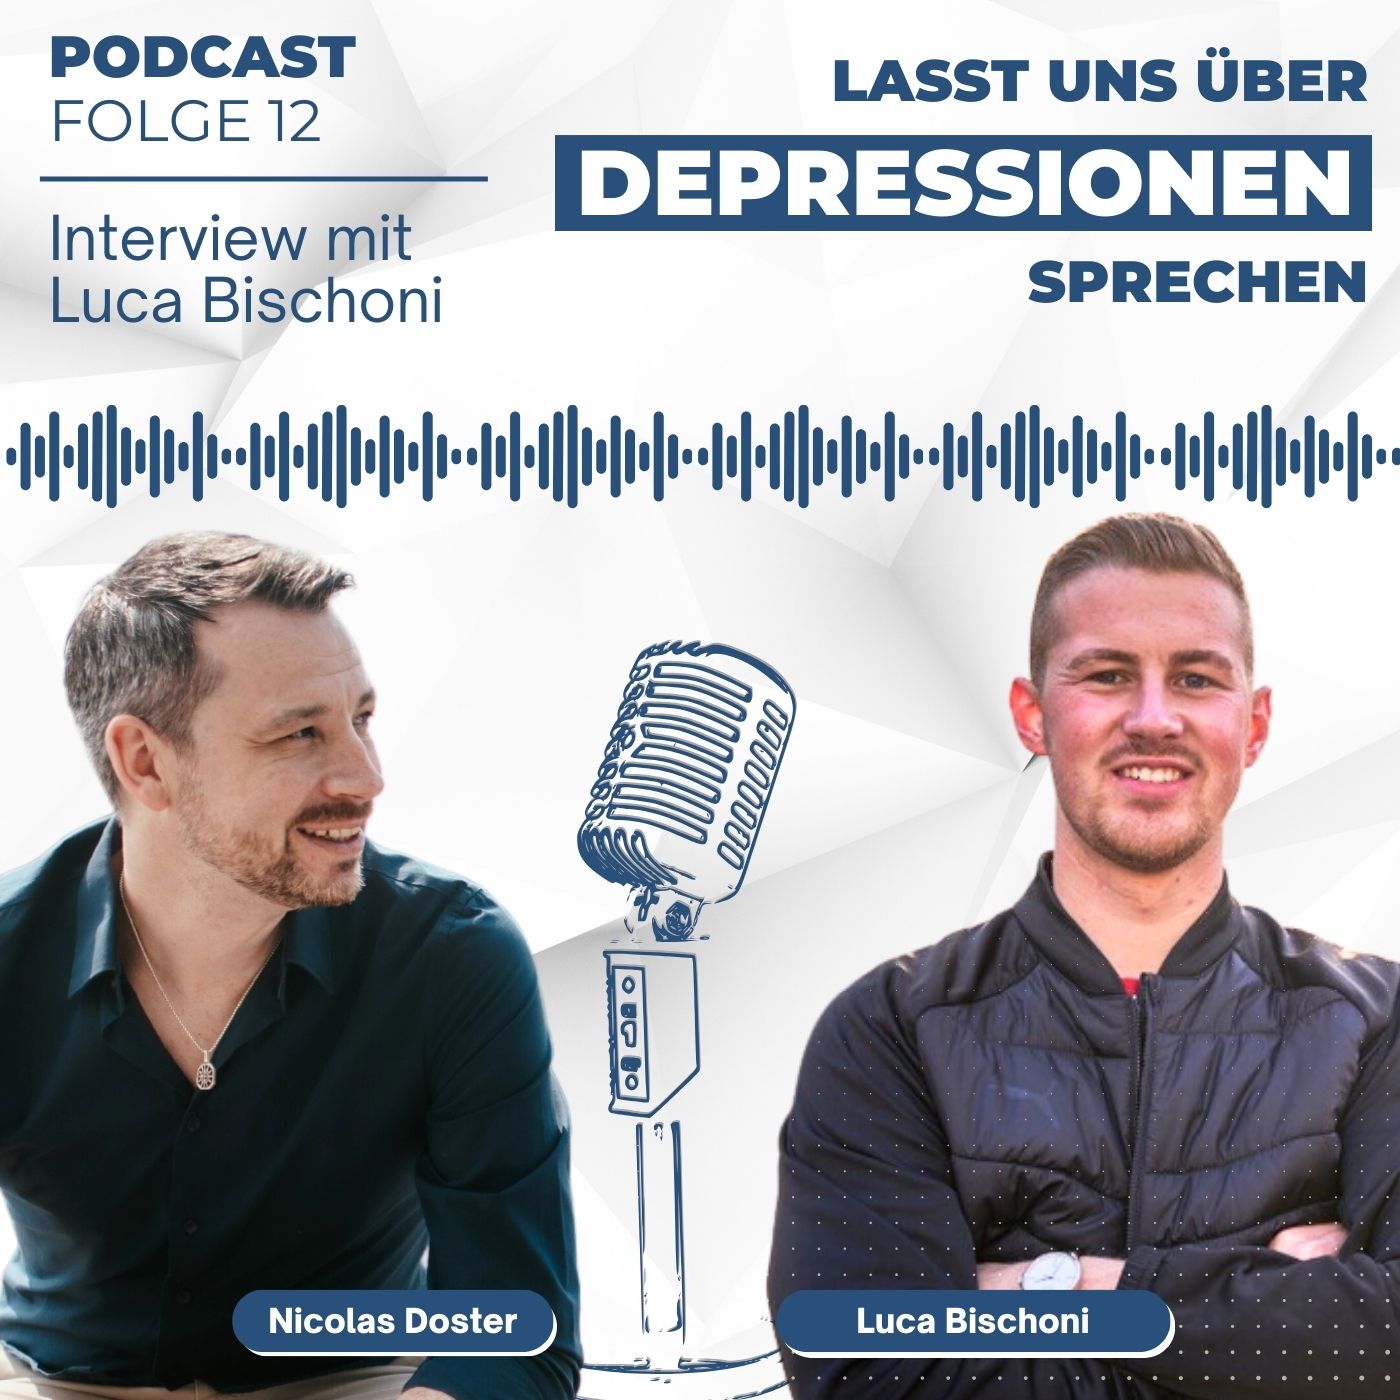 Folge 12 - Schule, Studium, Absturz in die Depression - Interview mit Luca Bischoni